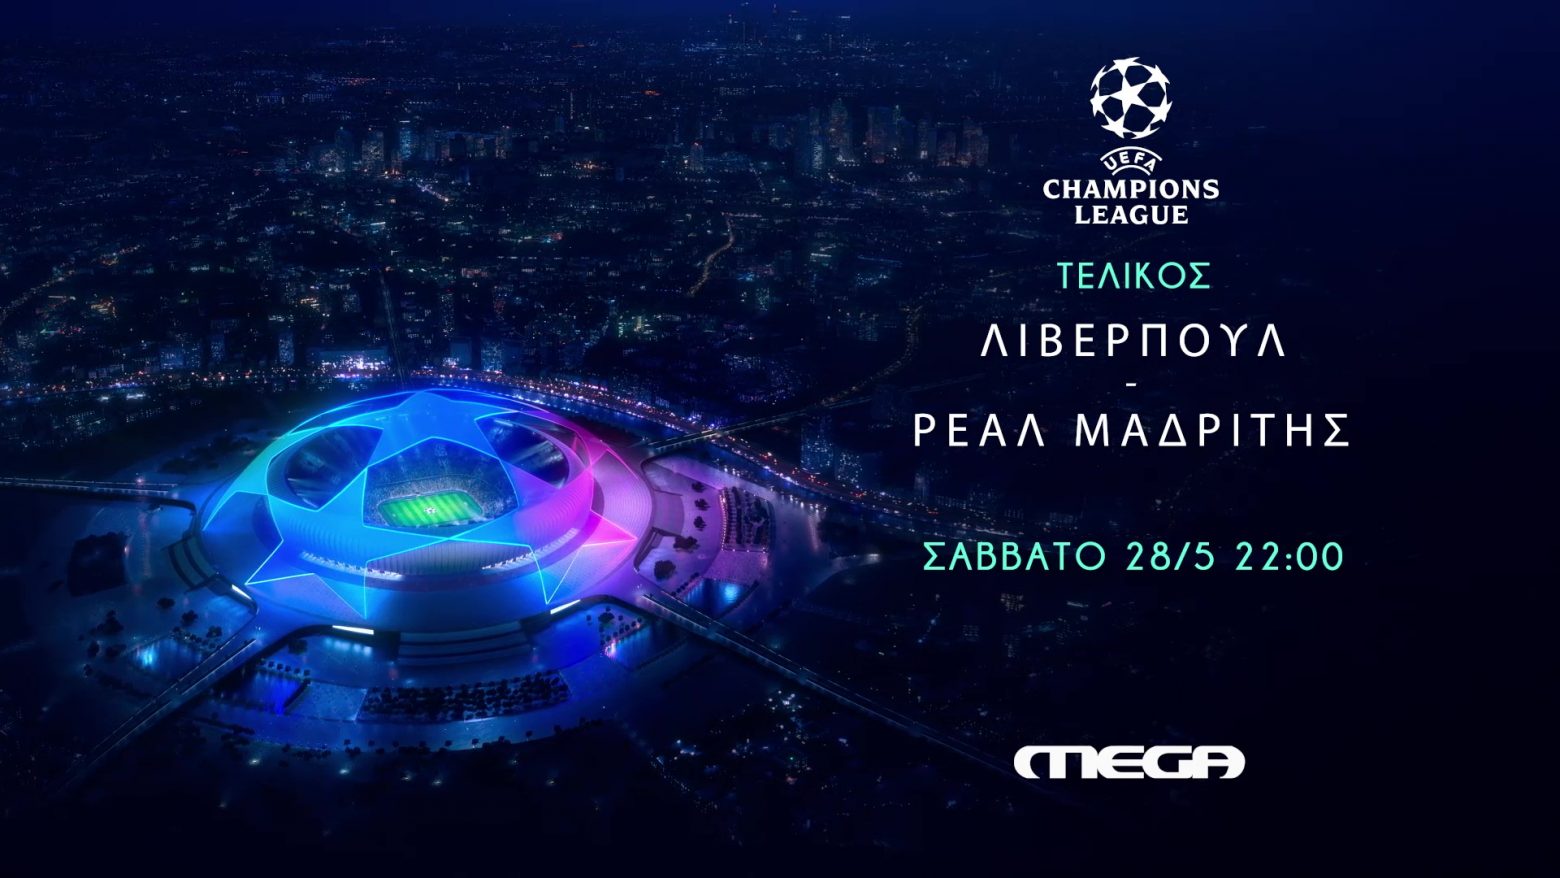 Τελικός UEFA Champions League: Λίβερπουλ - Ρεάλ Μαδρίτης ζωντανά στο Mega, Σάββατο 28 Μαΐου στις 22:00